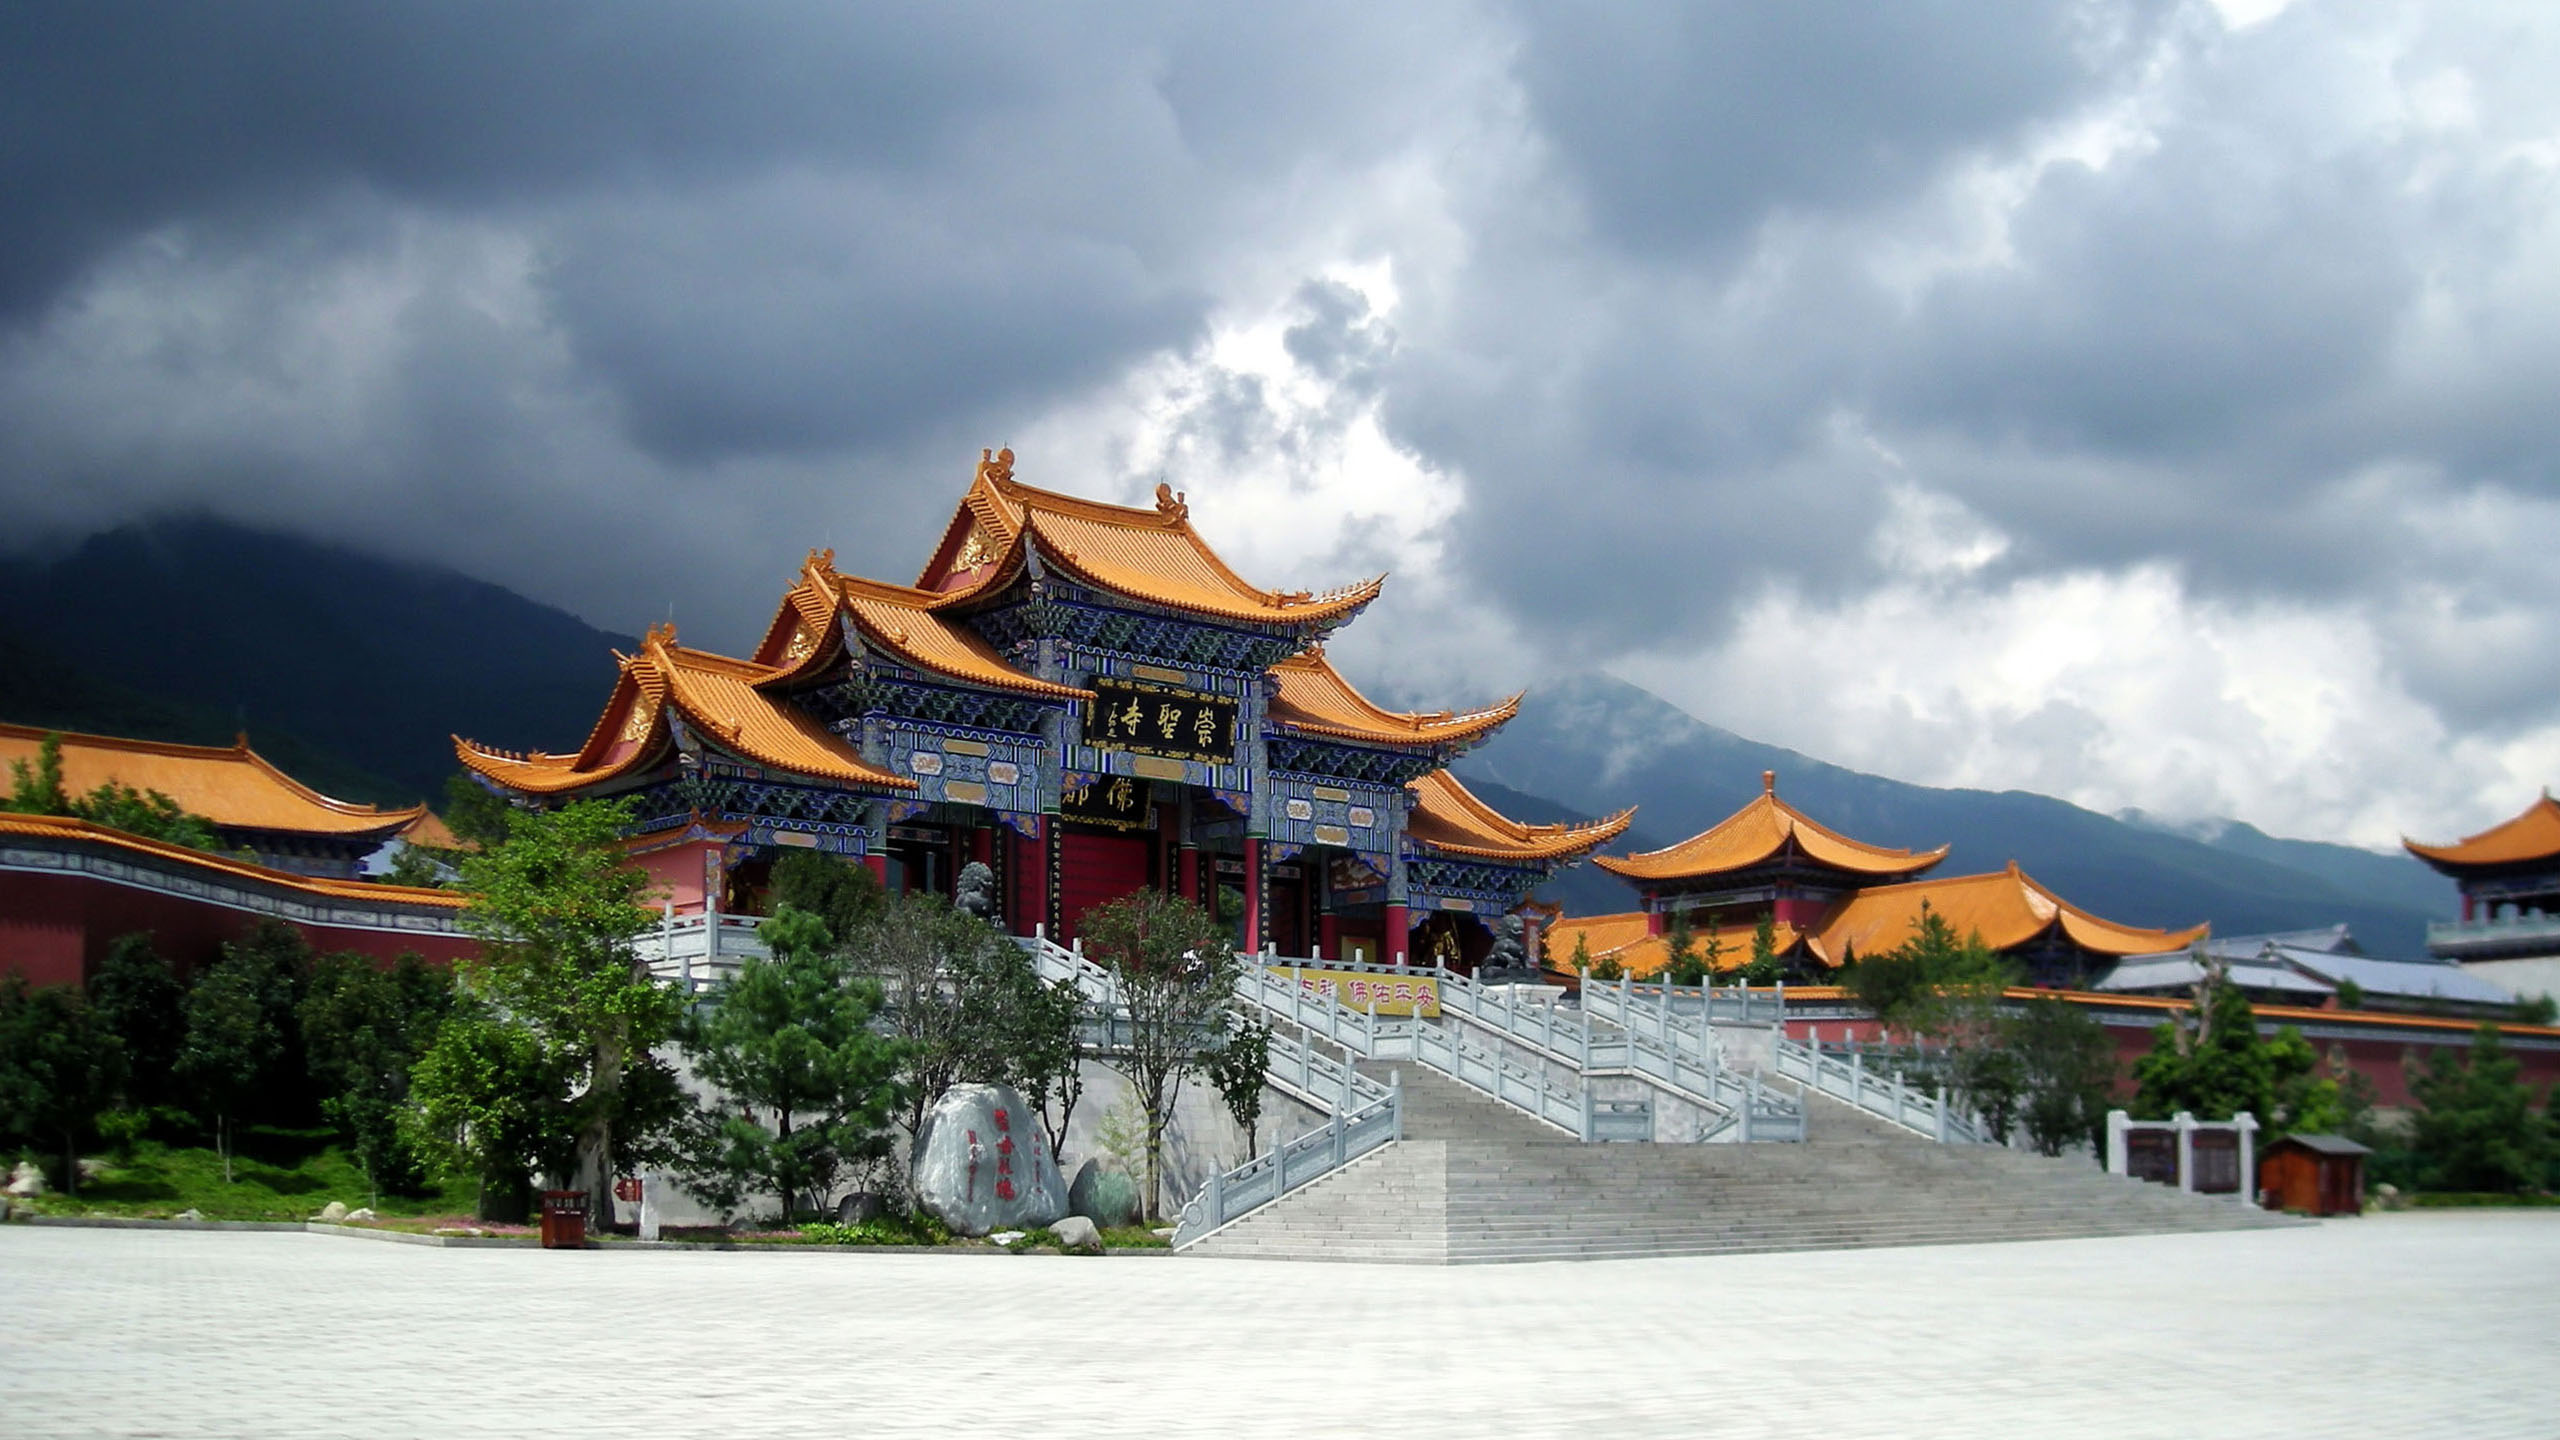 Bộ sưu tập hình nền Trung Quốc sẽ giúp bạn khám phá những cảnh đẹp tuyệt vời của quê hương Bắc Kinh. Hãy thư giãn với những hình ảnh phong phú và đầy màu sắc để tạo không gian làm việc thú vị hơn.